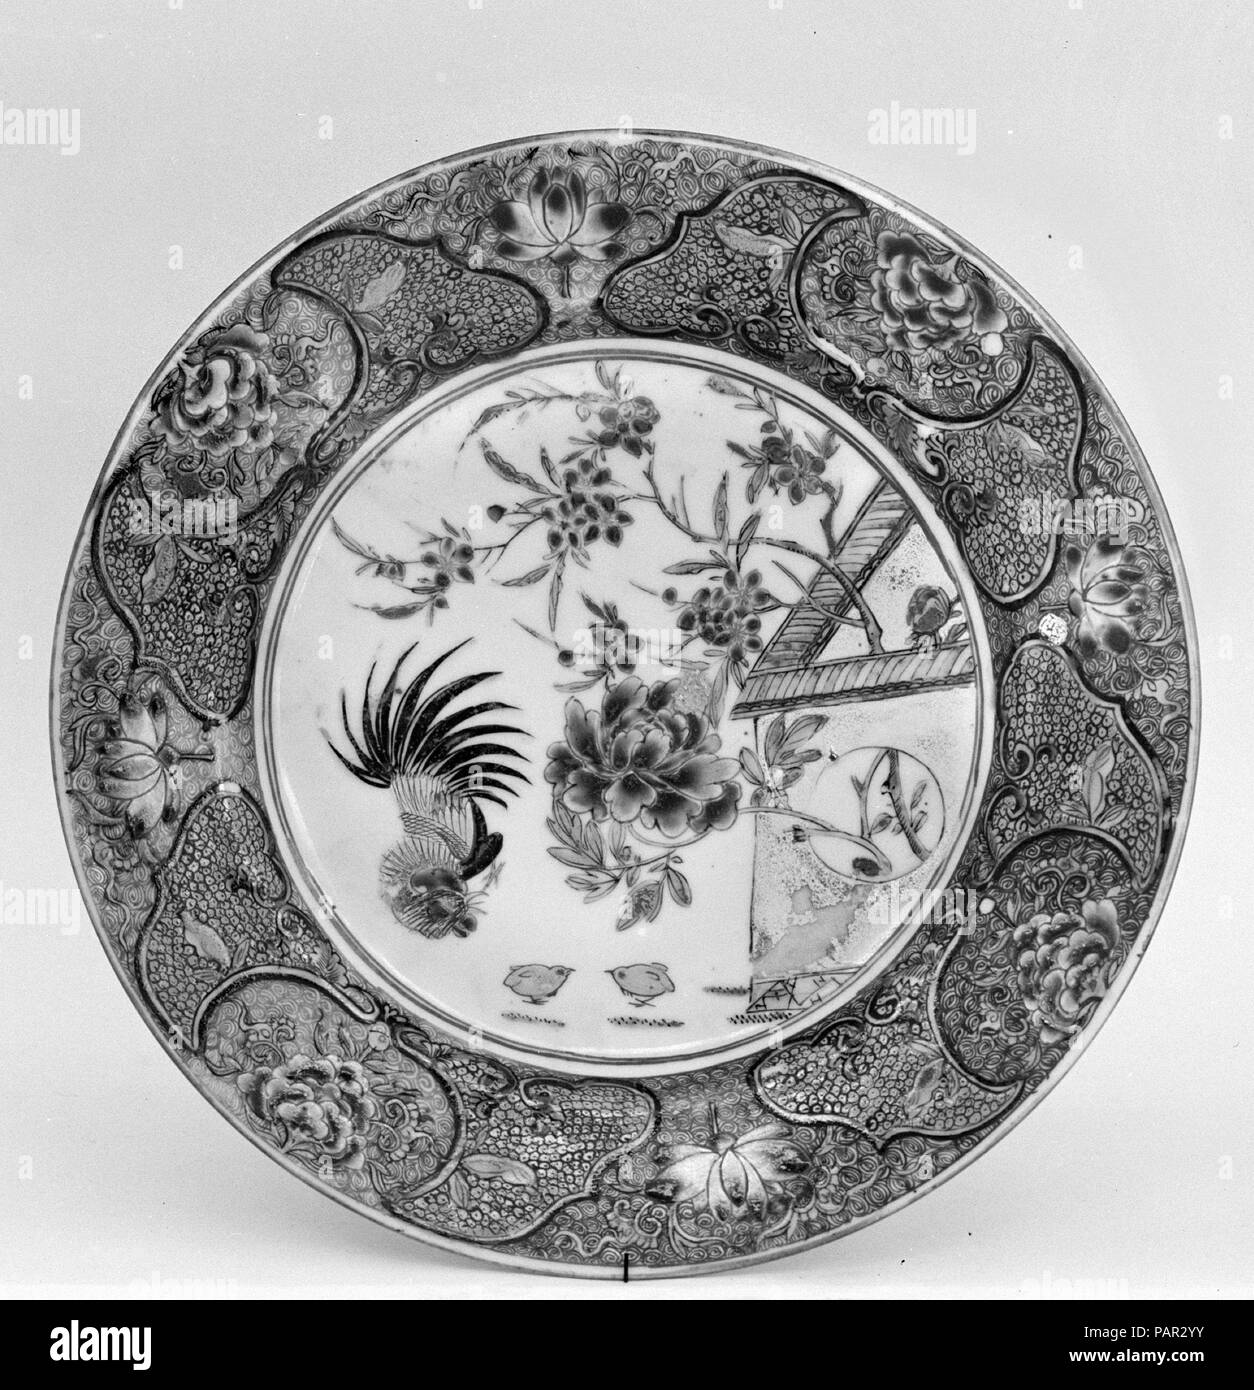 La plaque. Culture : la Chine. Dimensions : diam. 9 in. (22,9 cm). Date : fin 18e-19e siècle. Musée : Metropolitan Museum of Art, New York, USA. Banque D'Images